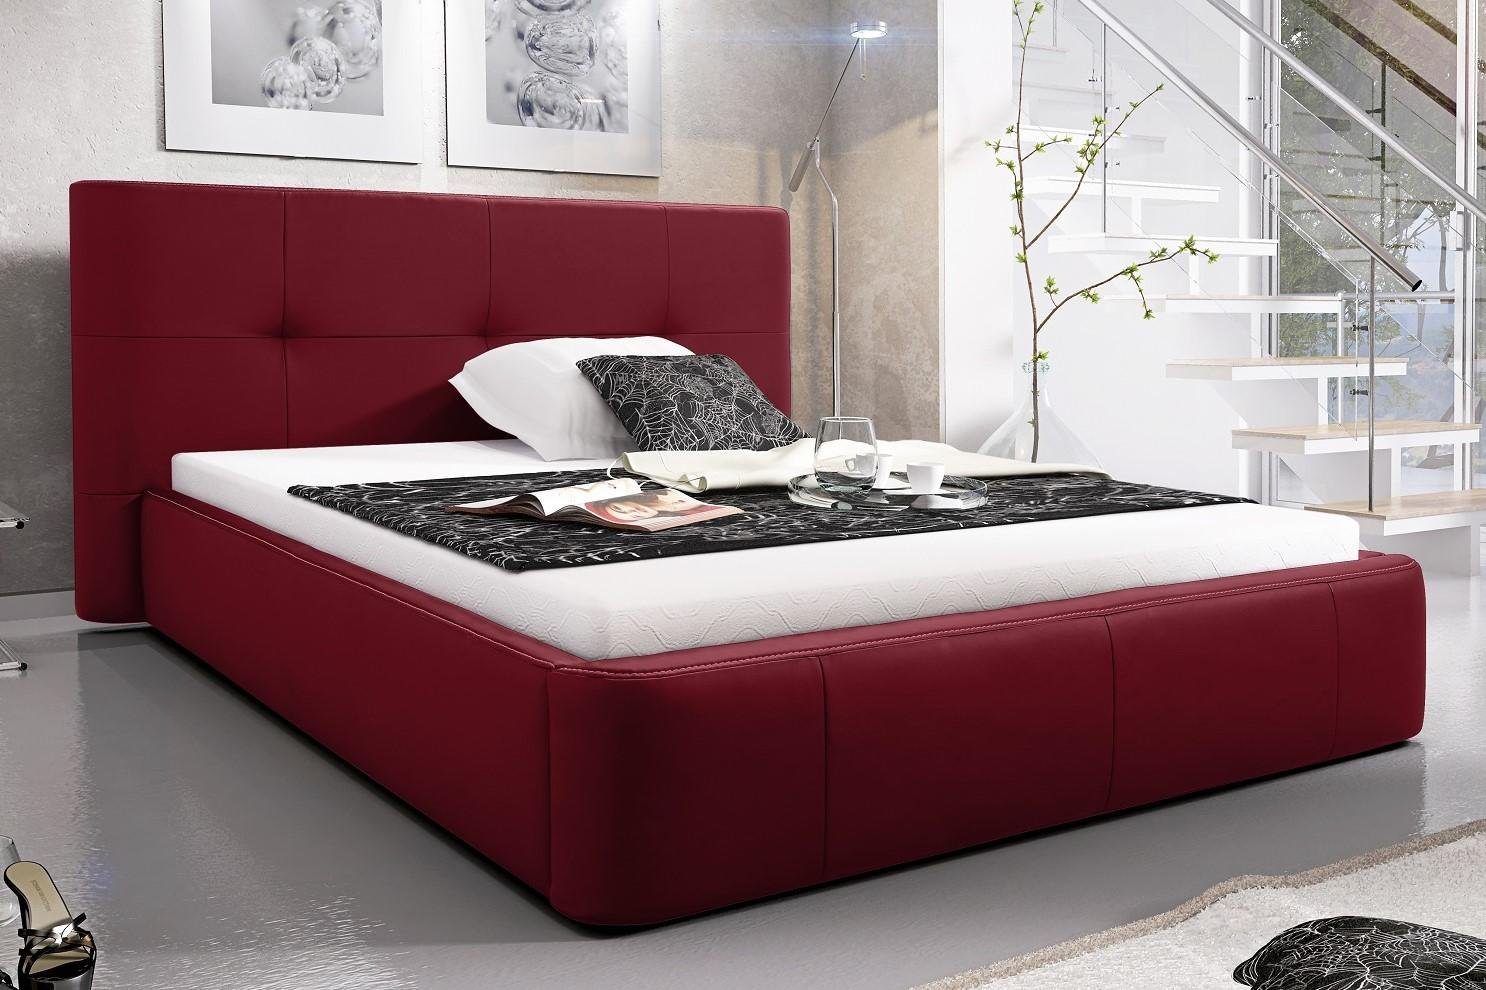 JVmoebel Bett, Bett Polster Design Luxus Doppel Hotel Betten Schlaf Zimmer Leder Rot